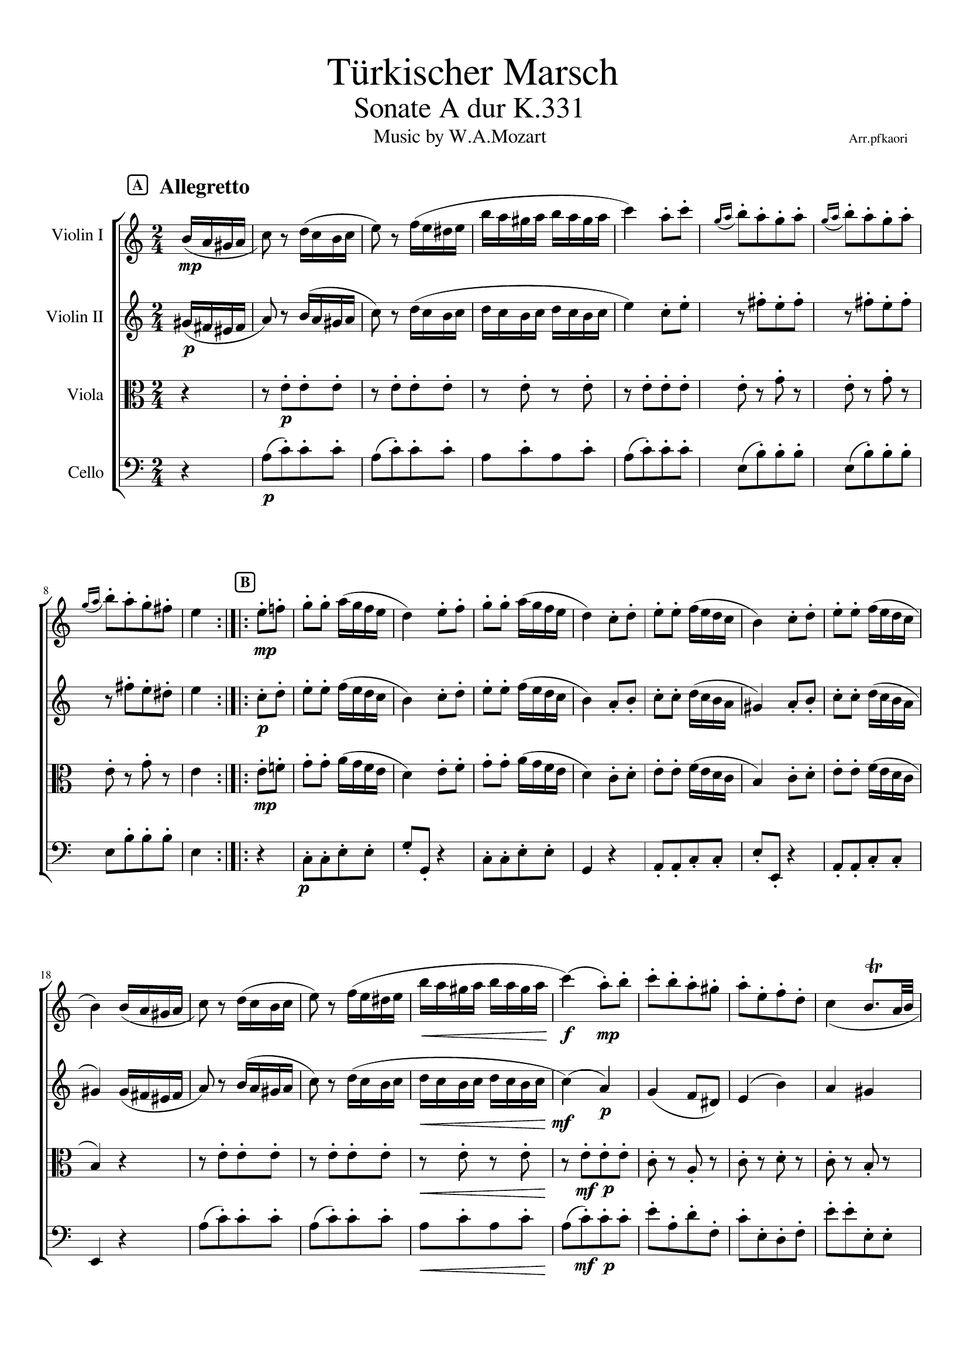 モーツァルト - トルコ行進曲 (弦楽四重奏(vn1,vn2,va,vc)/無伴奏) by pfkaori